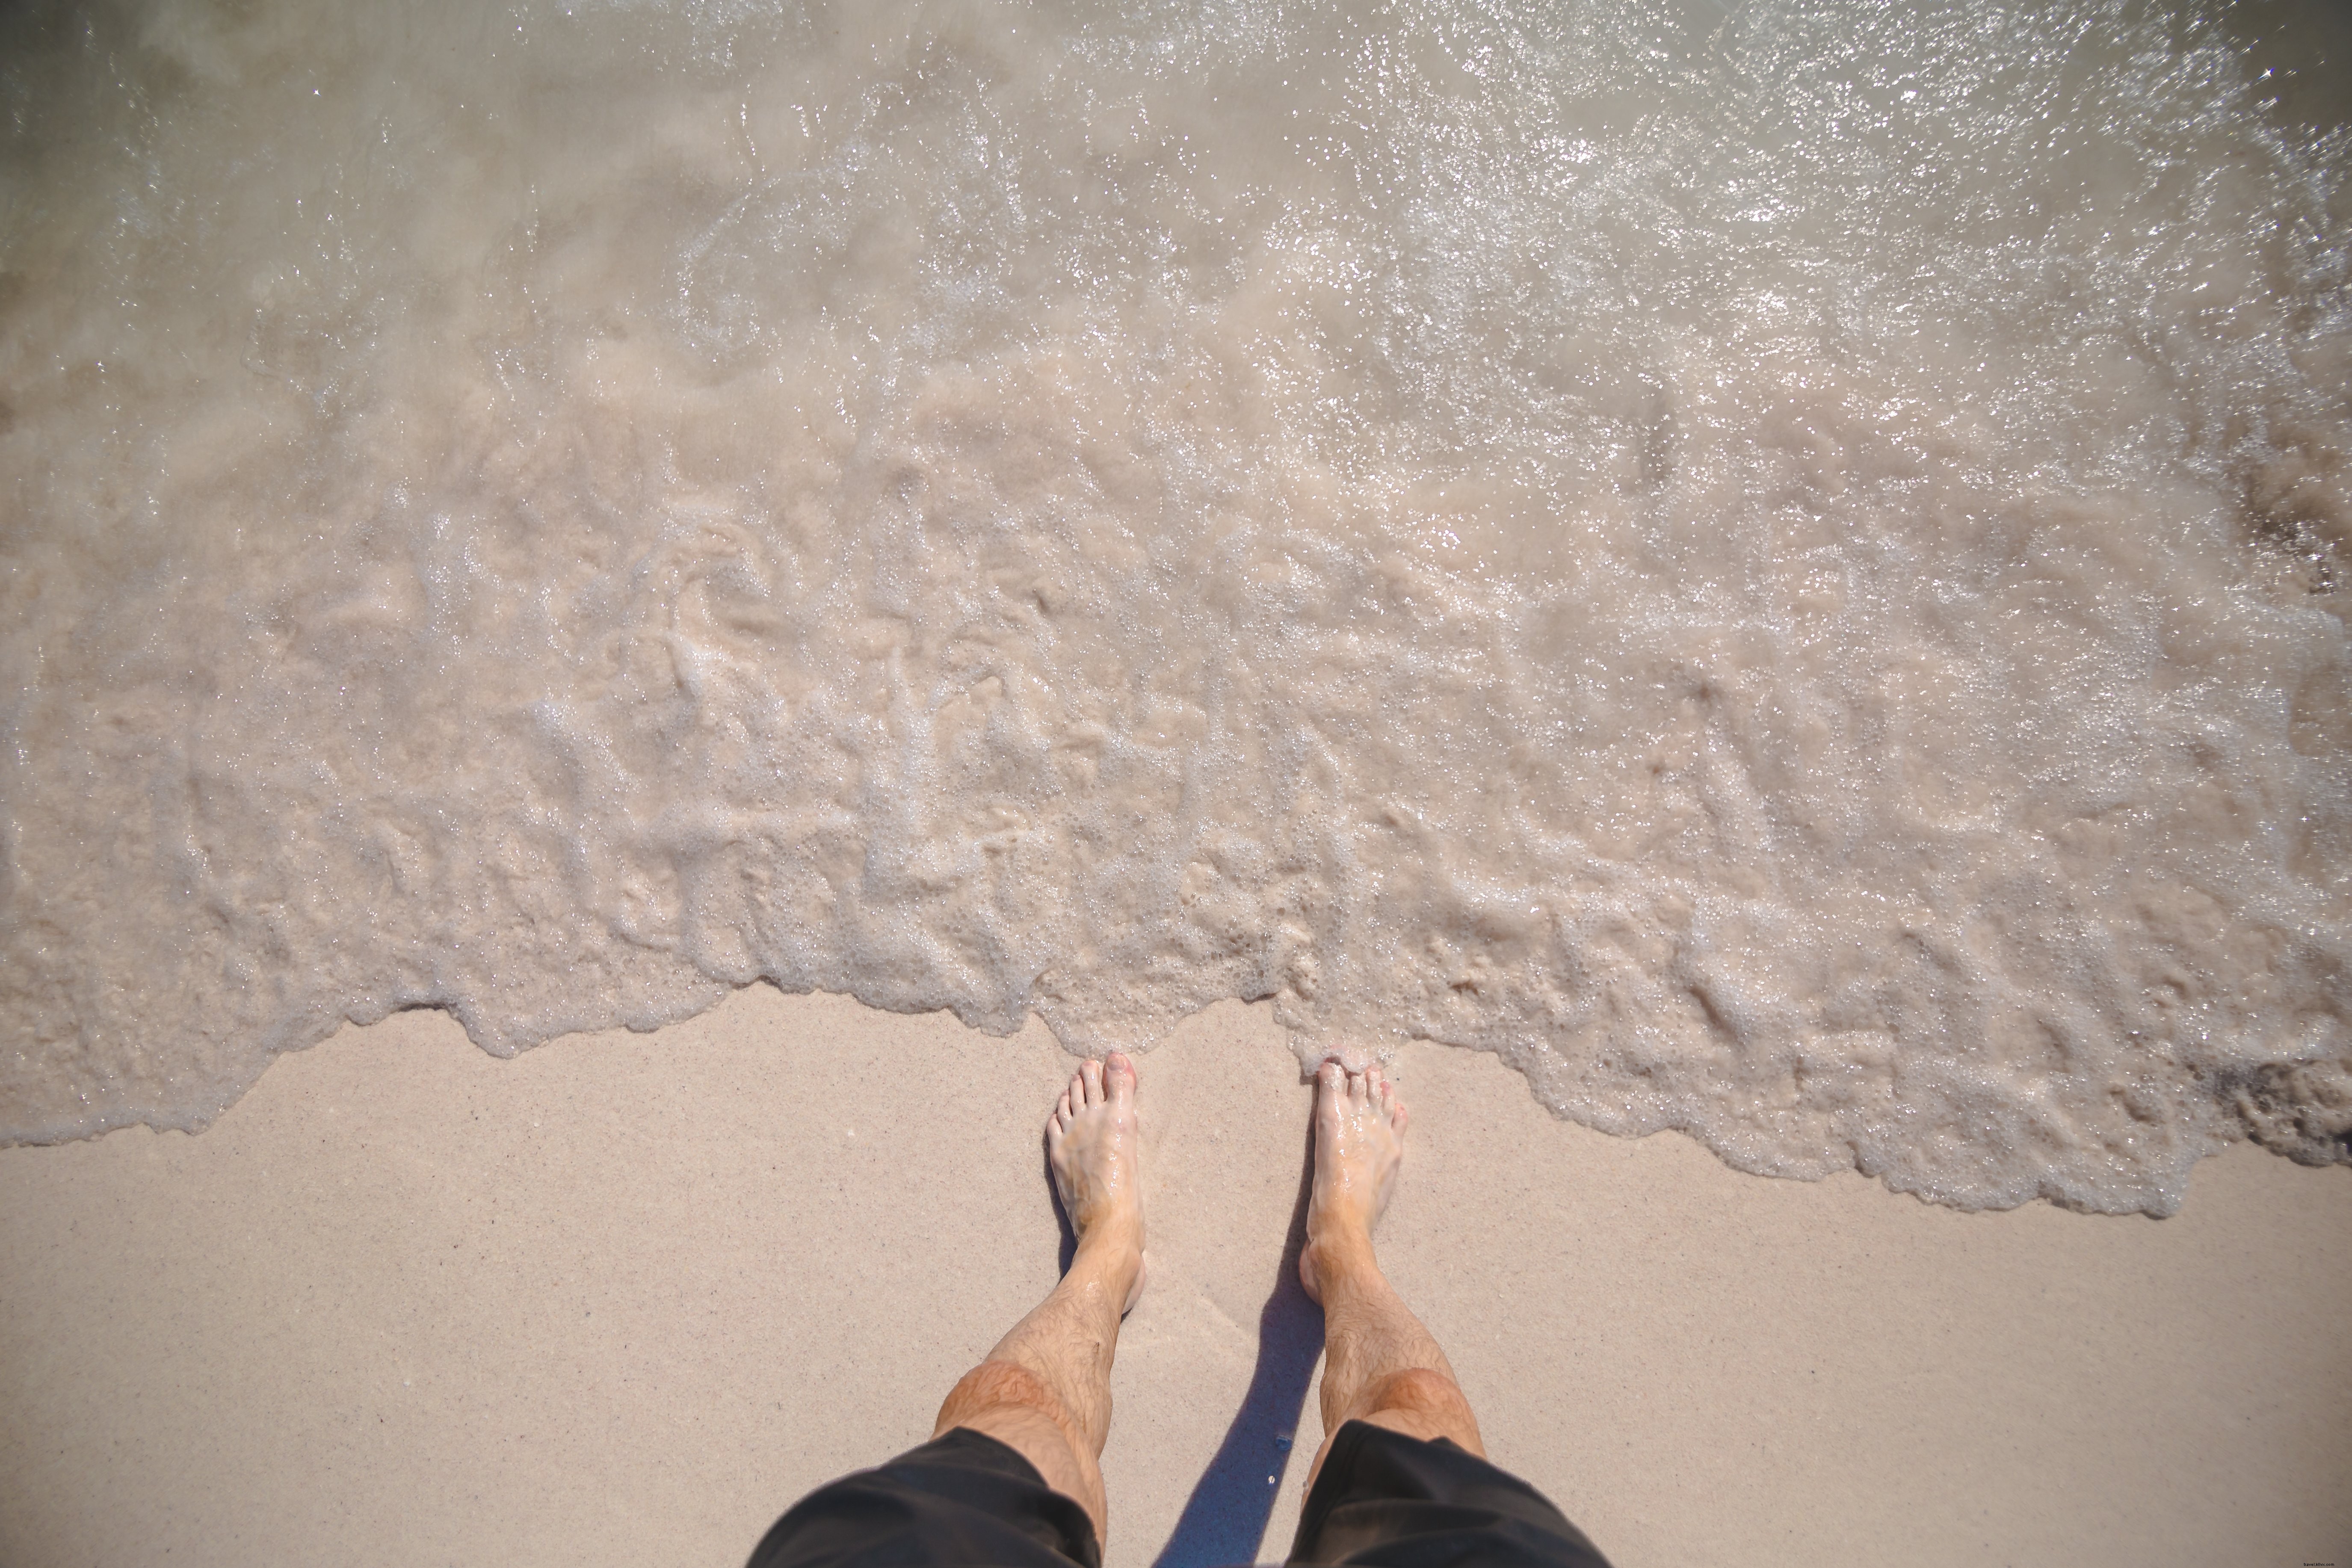 Mans pieds sur Ocean Shore Photo